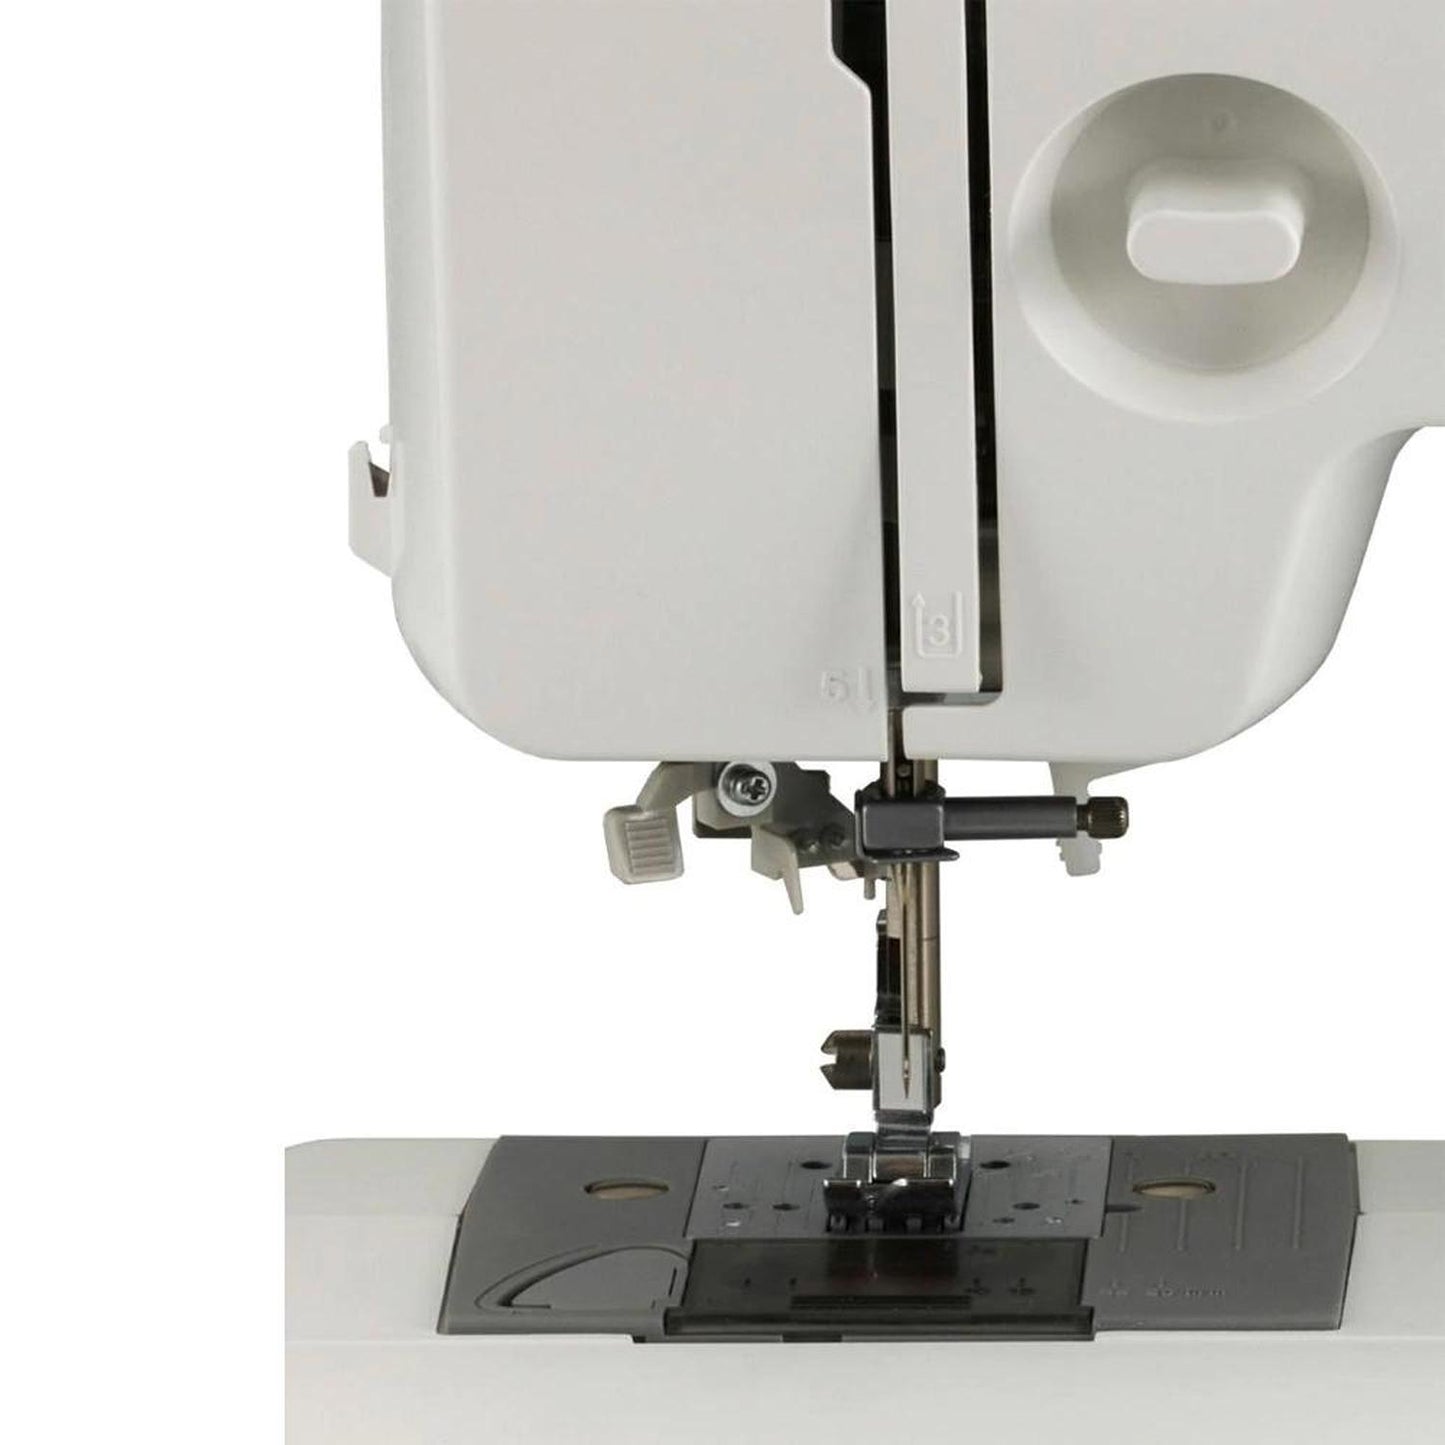 Máquina de coser doméstica Brother XL2800, 27 puntadas, ojal automático de 1 paso, luz LED.